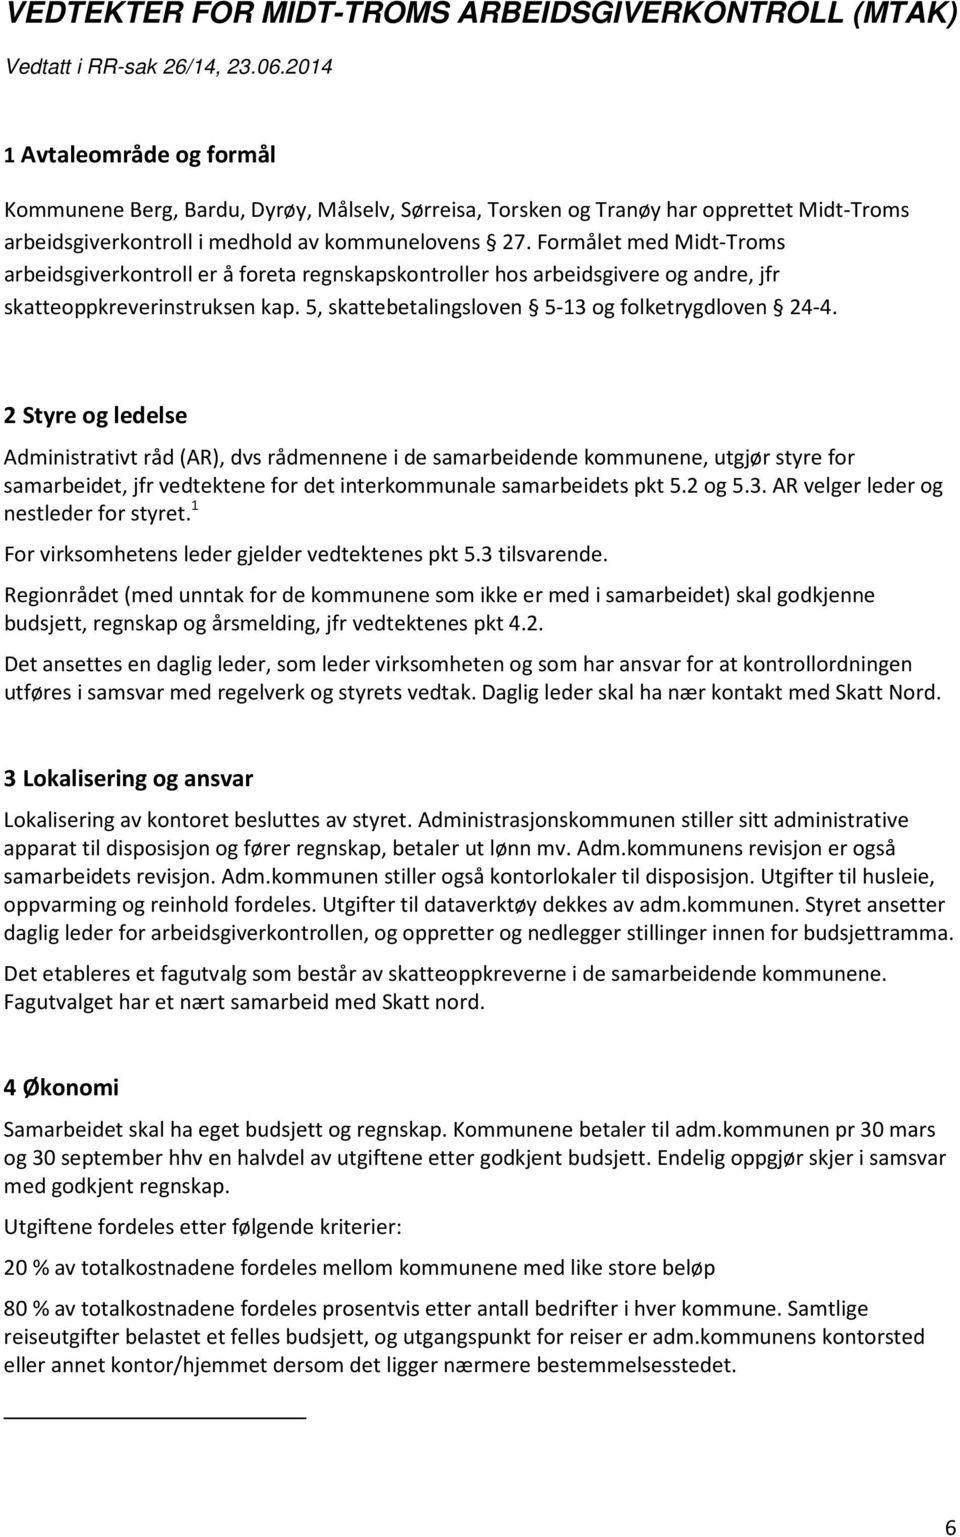 Formålet med Midt-Troms arbeidsgiverkontroll er å foreta regnskapskontroller hos arbeidsgivere og andre, jfr skatteoppkreverinstruksen kap. 5, skattebetalingsloven 5-13 og folketrygdloven 24-4.